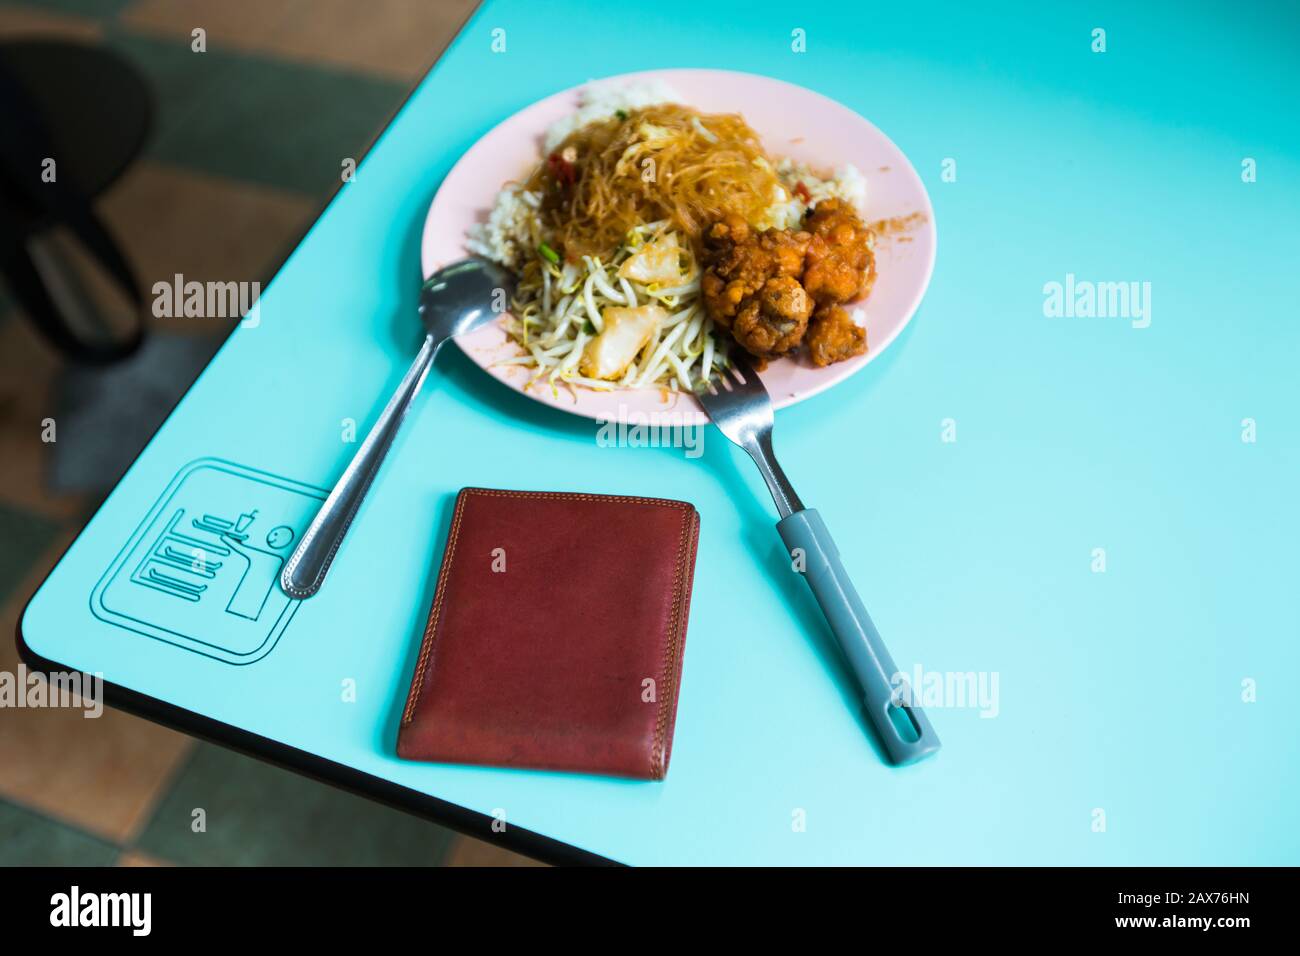 Eine unbeaufsichtigte braune Farbtasche neben einem Teller gemischter chinesischer Reismahlzeit am Rand des Tisches. Stockfoto